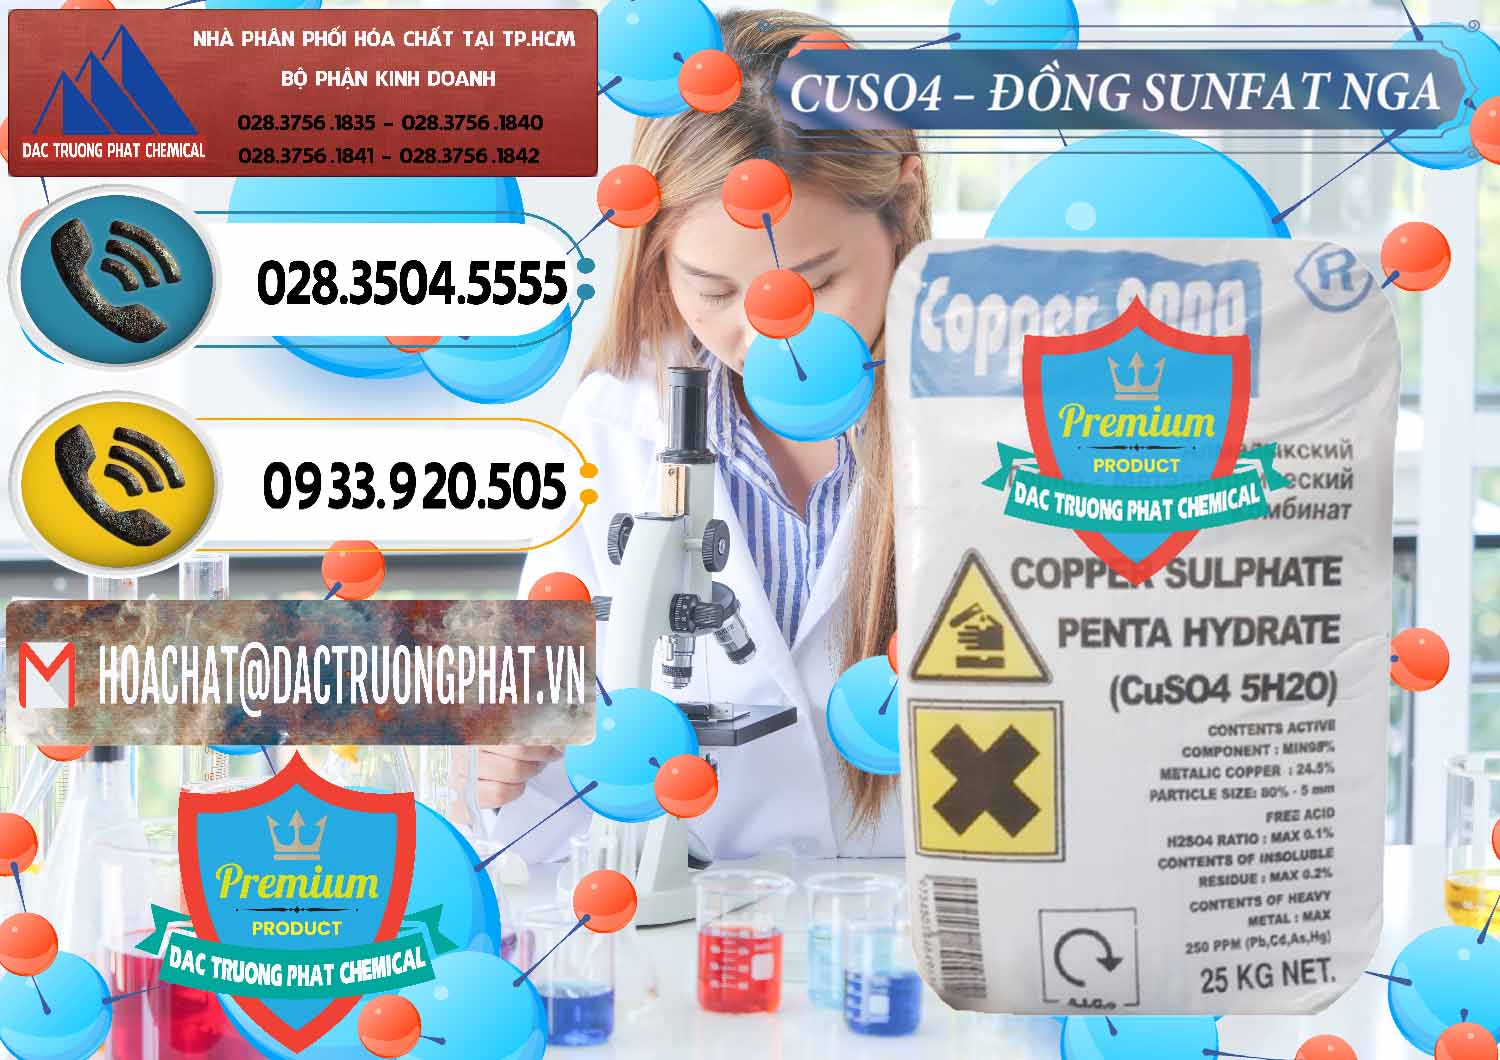 Công ty chuyên cung ứng & bán CuSO4 – Đồng Sunfat Nga Russia - 0480 - Cty cung cấp - kinh doanh hóa chất tại TP.HCM - hoachatdetnhuom.vn